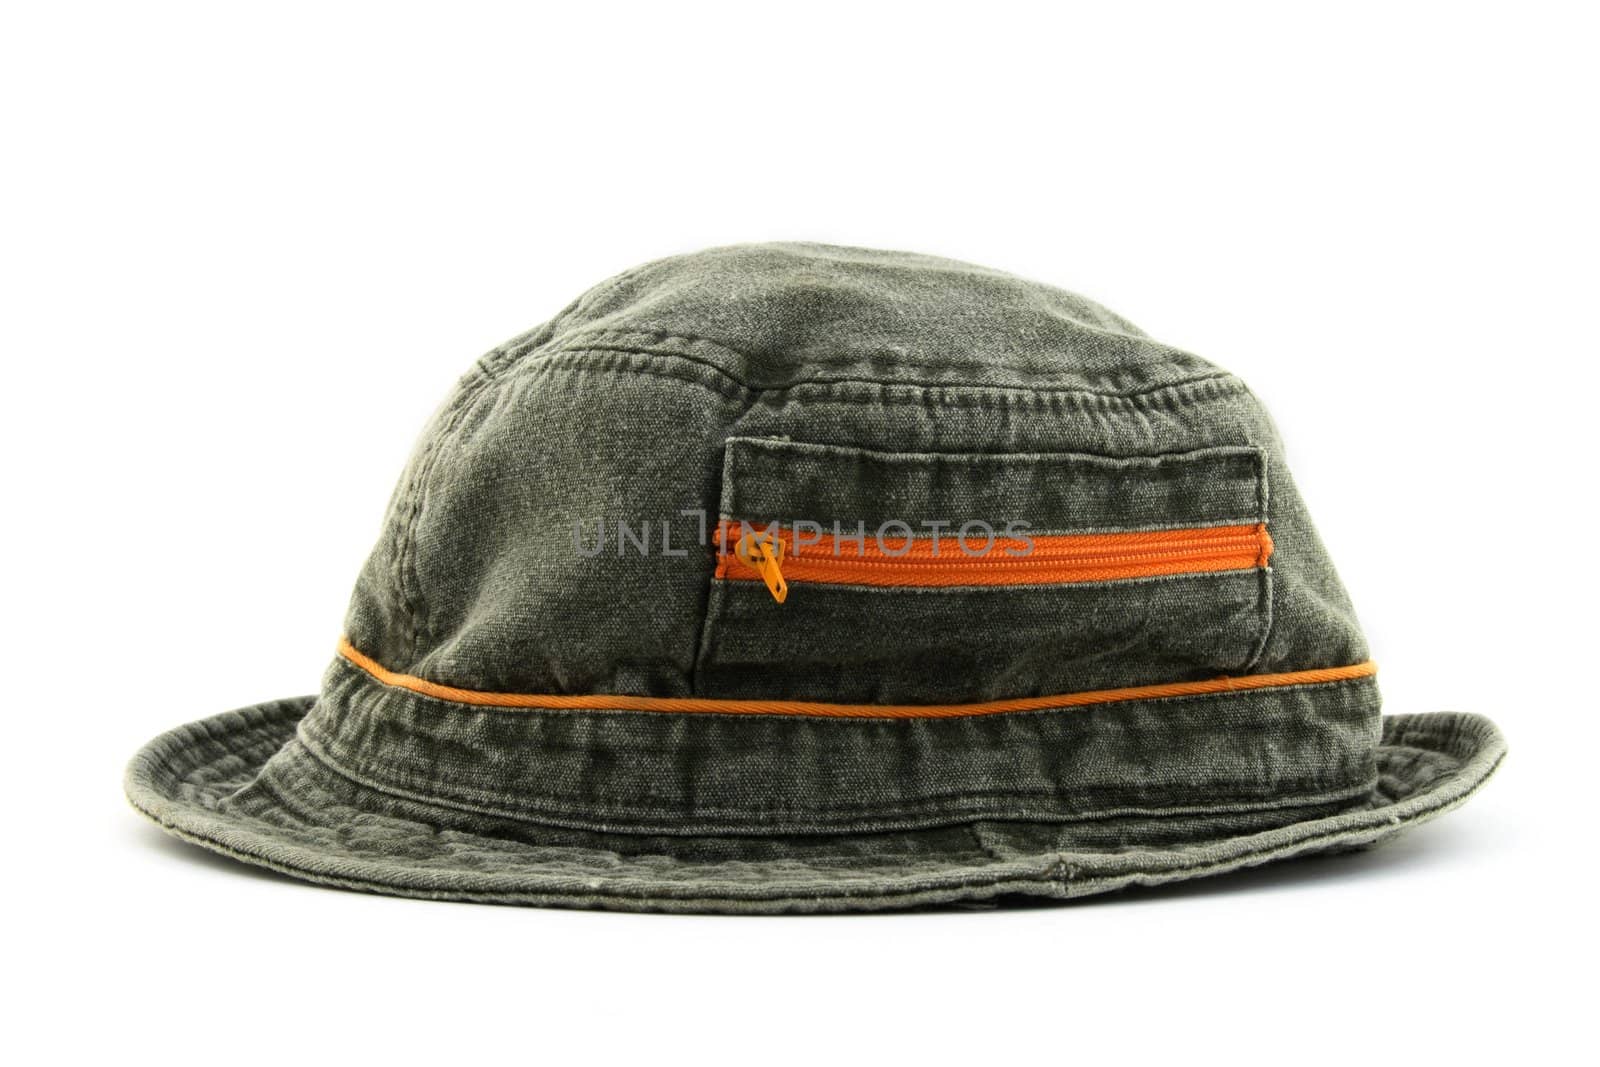 Summer denim hat with orange zipper by anikasalsera